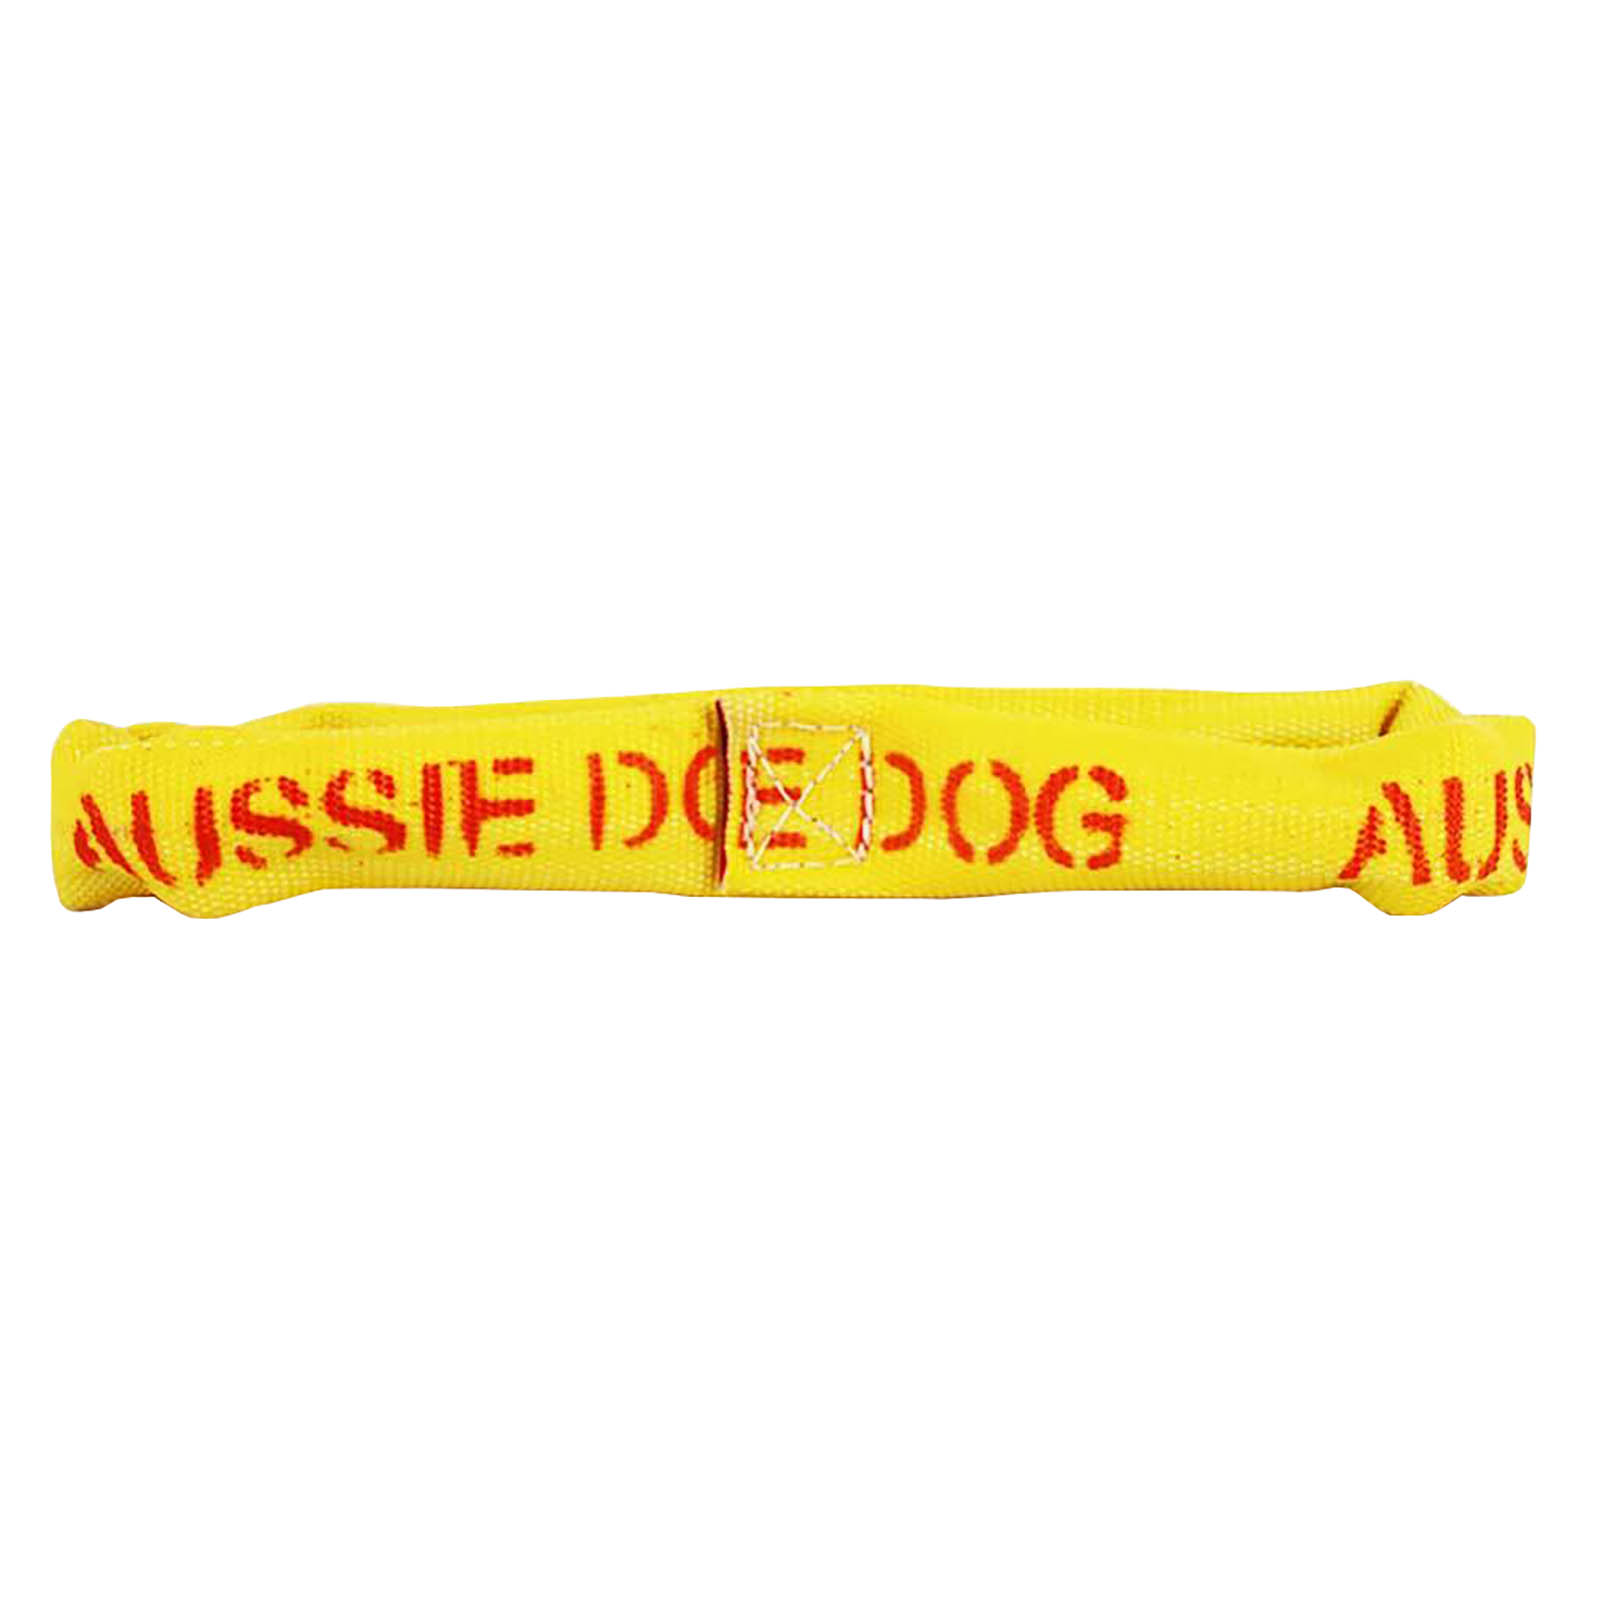 Aussie Dog Eightathong Floating Tug Dog Toy - Medium image 0